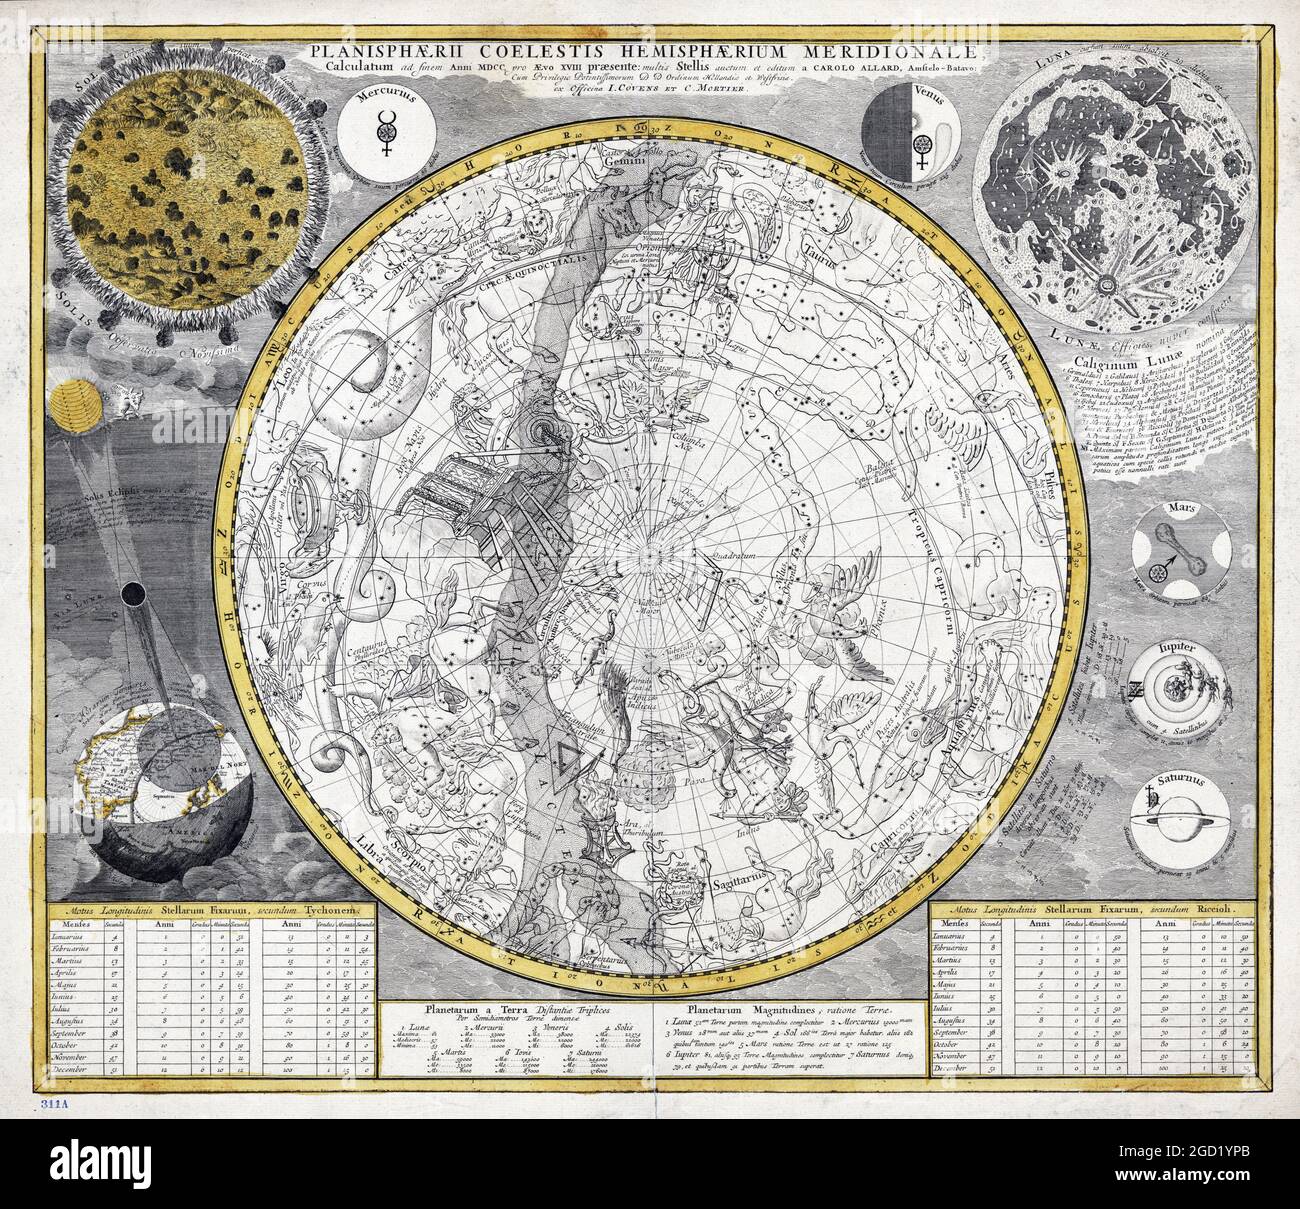 Planisphaerii coelestis hemisphaerium meridionale – fabriqué par Allard, Carel, 1648-environ 1709. Montre une vue hémisphérique avec des signes du zodiaque... Banque D'Images